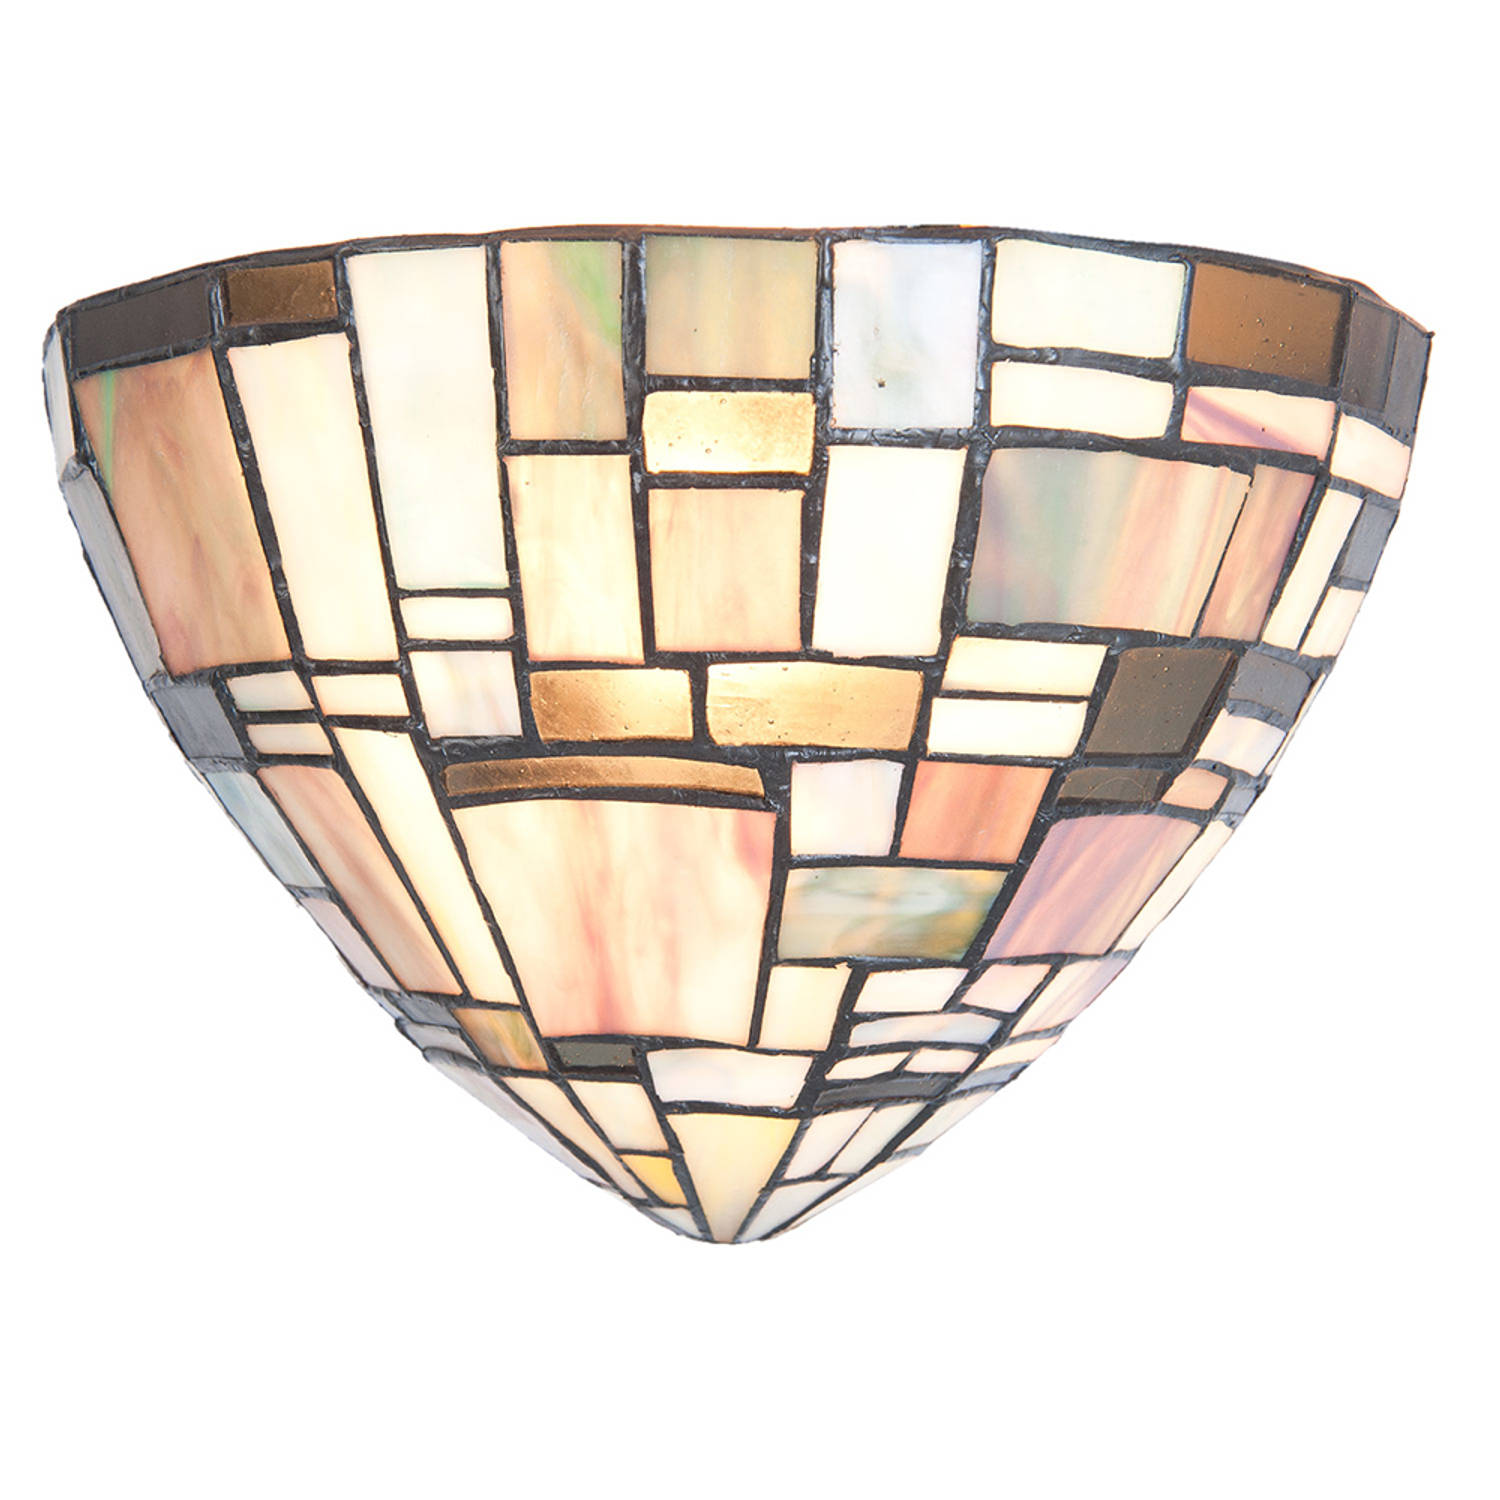 HAES DECO - Wandlamp Tiffany 30x16x18 cm Bruin Beige Glas Driehoek Muurlamp Sfeerlamp Glas in Lood